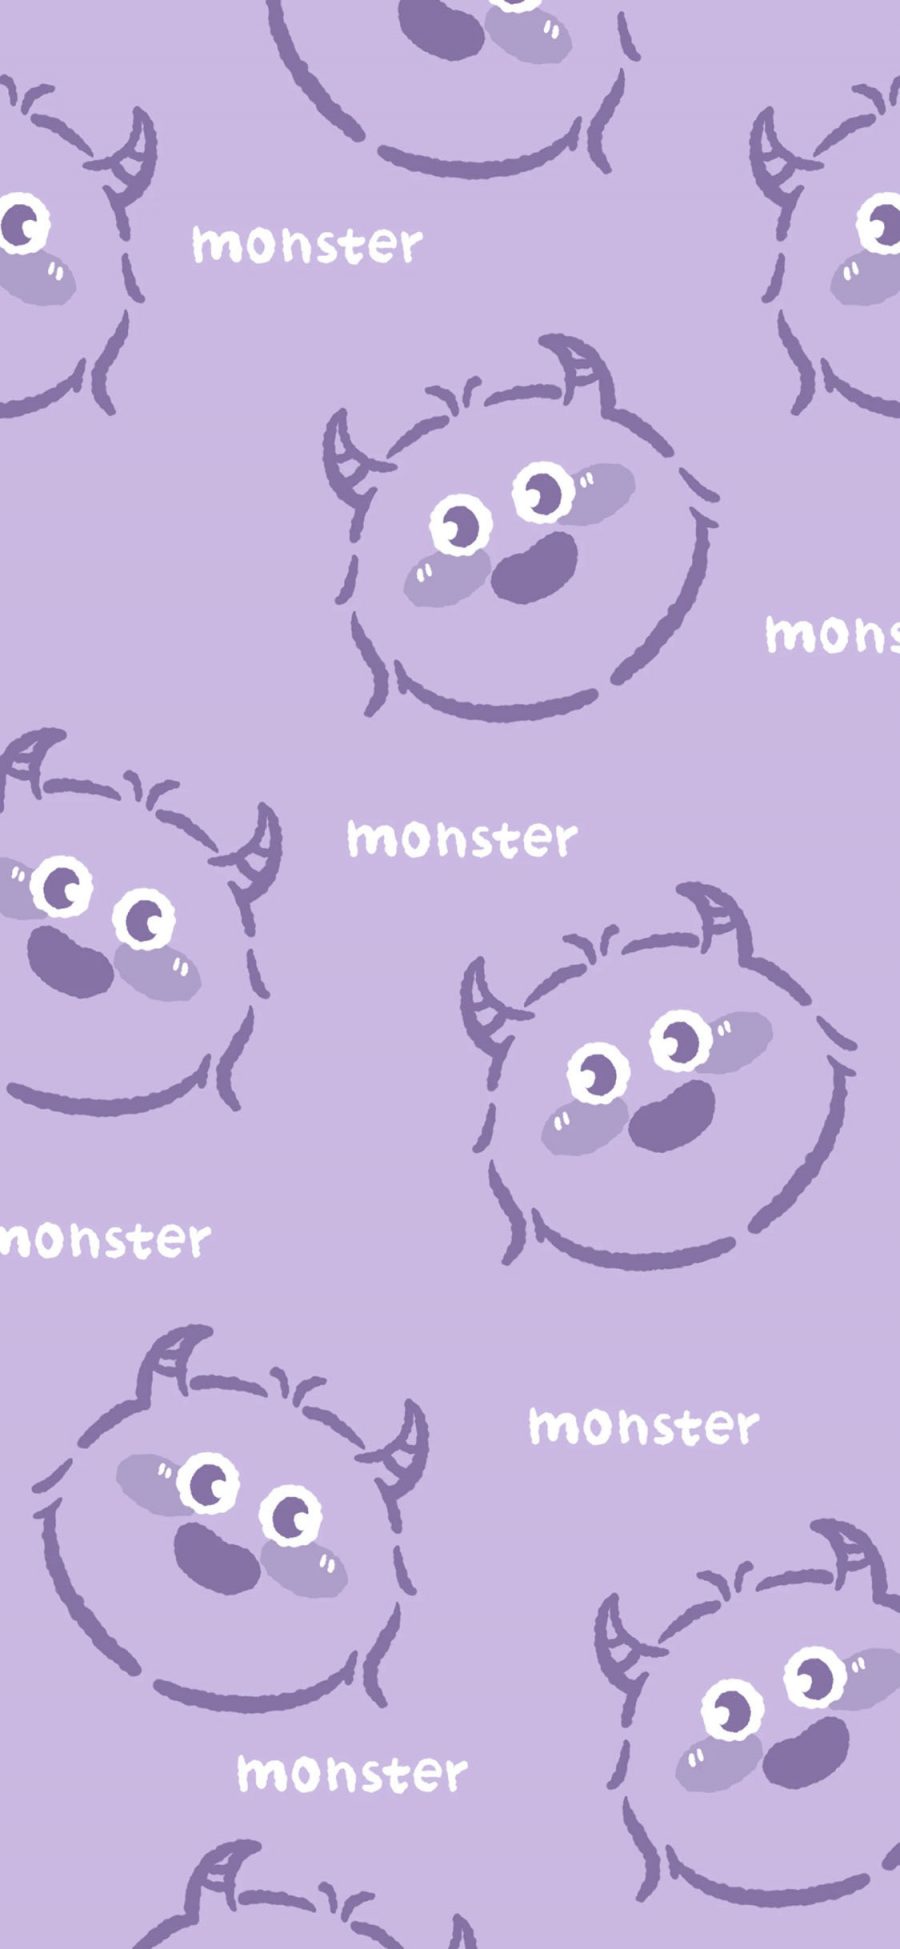 [2436×1125]小怪兽 monster 平铺 可爱 苹果手机动漫壁纸图片